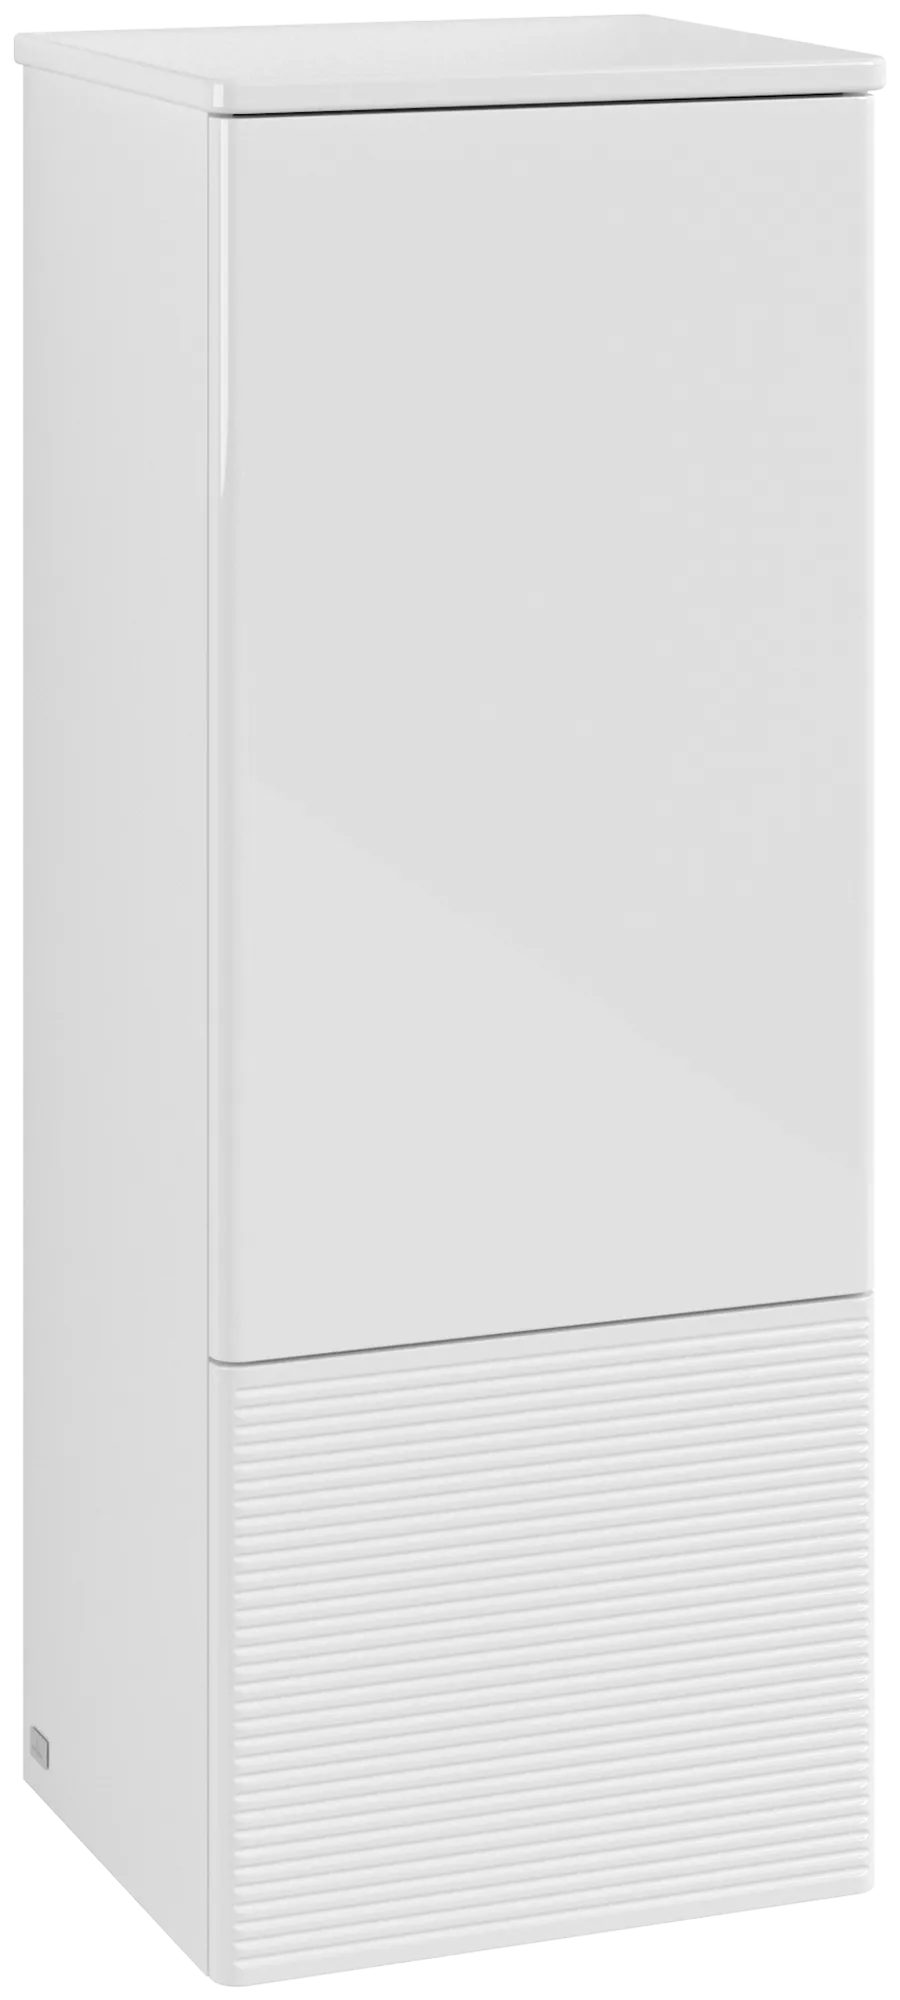 Picture of VILLEROY BOCH Antao Medium-height cabinet, 1 door, 414 x 1039 x 356 mm, Front with grain texture, Glossy White Lacquer / Glossy White Lacquer #L43100GF